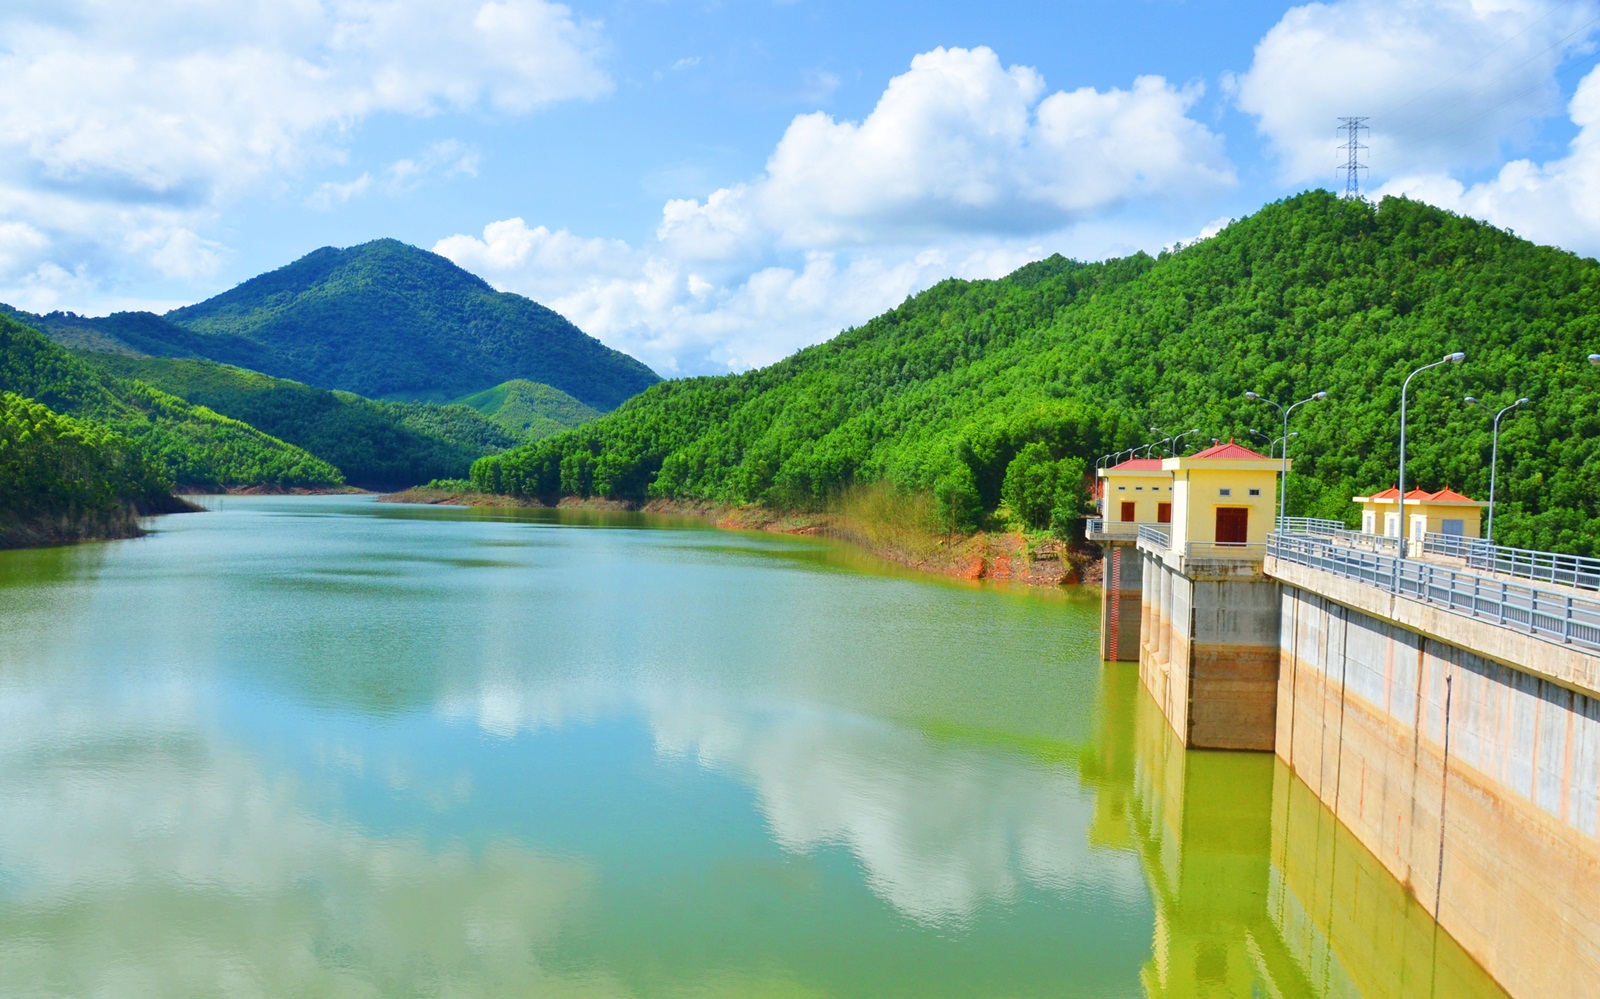 Hồ chứa nước Khe Cát được đầu tư với tổng kinh phí trên 400 tỷ đồng. Đến nay, công trình đã phát huy hiệu quả công năng sau đầu tư, góp phần cung cấp nước sinh hoạt, tưới tiêu và phục vụ nuôi trồng thủy sản cho nhân dân trên địa bàn.